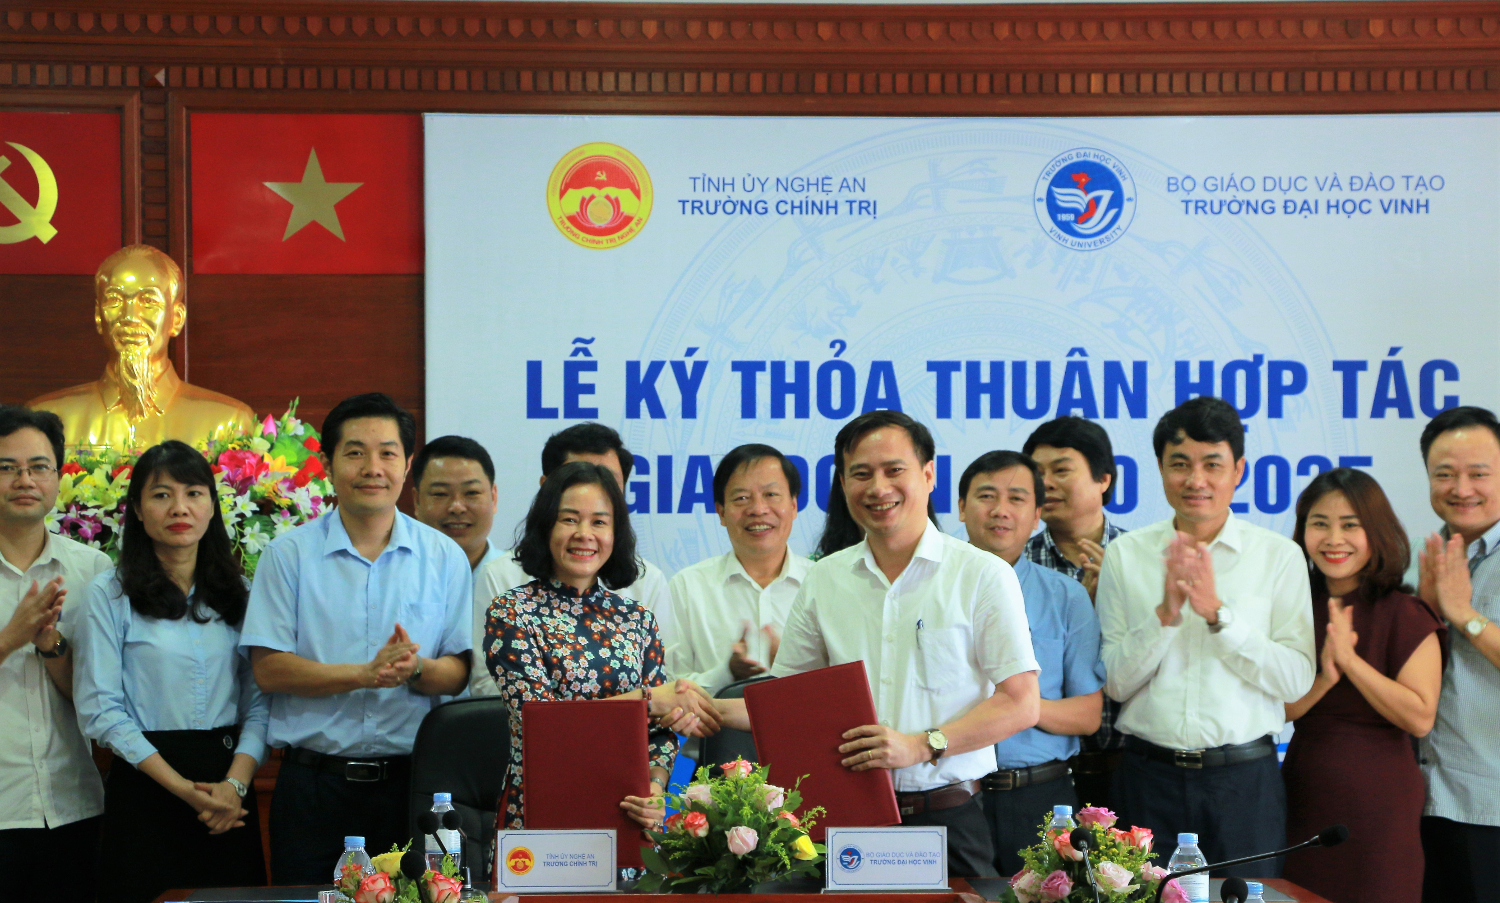 Trường Chính trị tỉnh Nghệ An ký thỏa thuận hợp tác với Trường Đại học Vinh